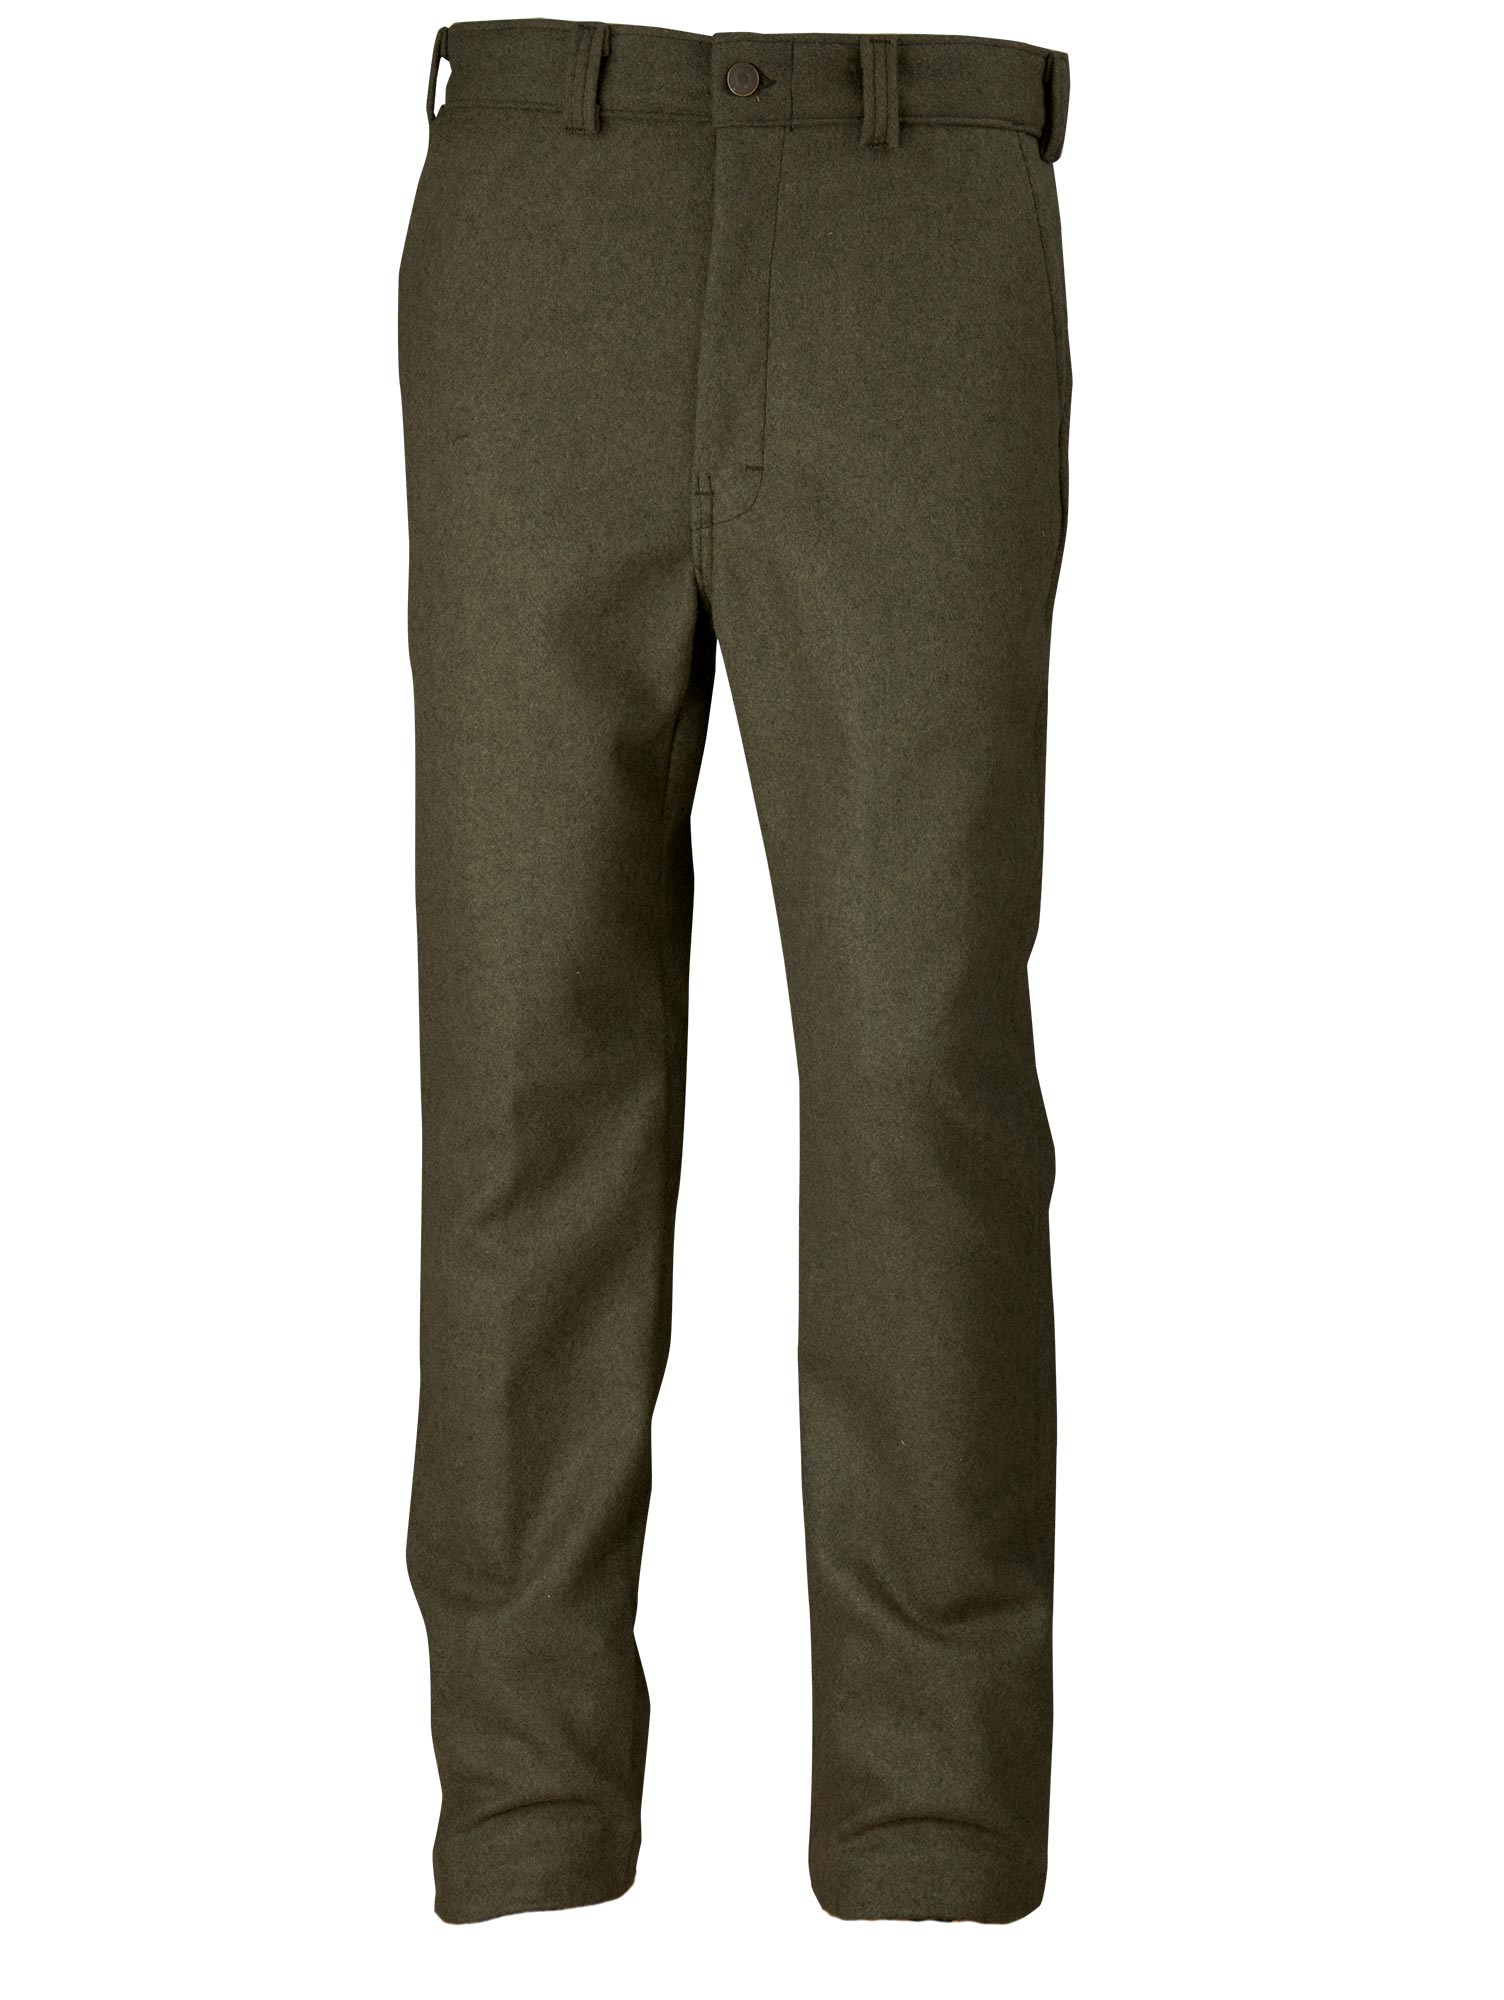 The Salford Charcoal Plain Pants | Men's Custom Pants | InStitchu